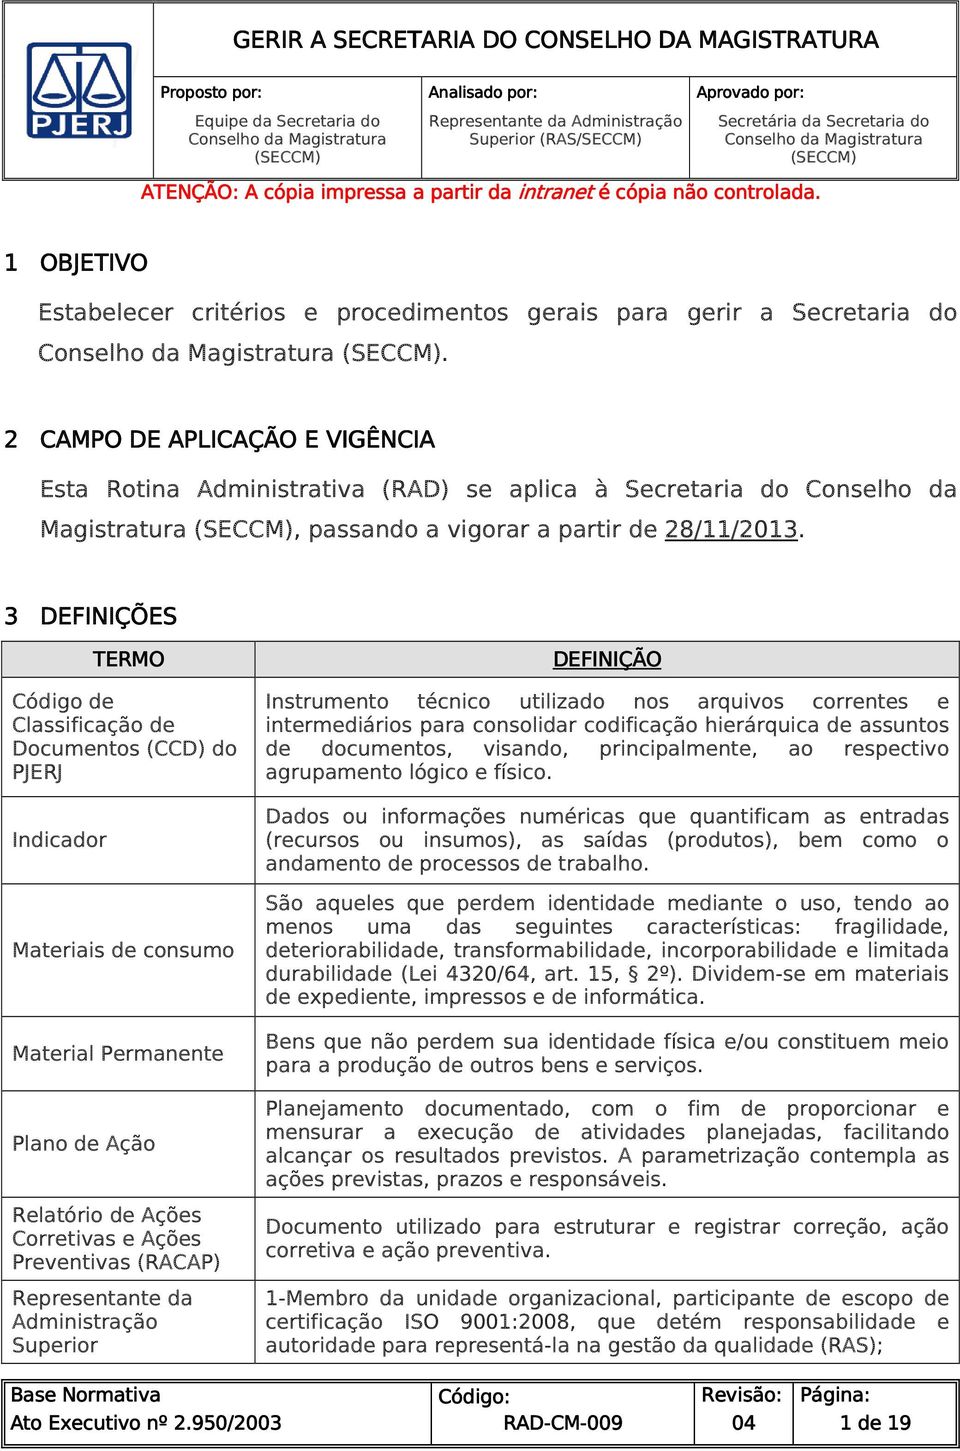 2 CAMPO DE APLICAÇÃO E VIGÊNCIA Eta Rotina Adminitrativa (RAD) e aplica à Secretaria do Conelho da Magitratura (SECCM), paando a vigorar a partir de 28/11/2013.